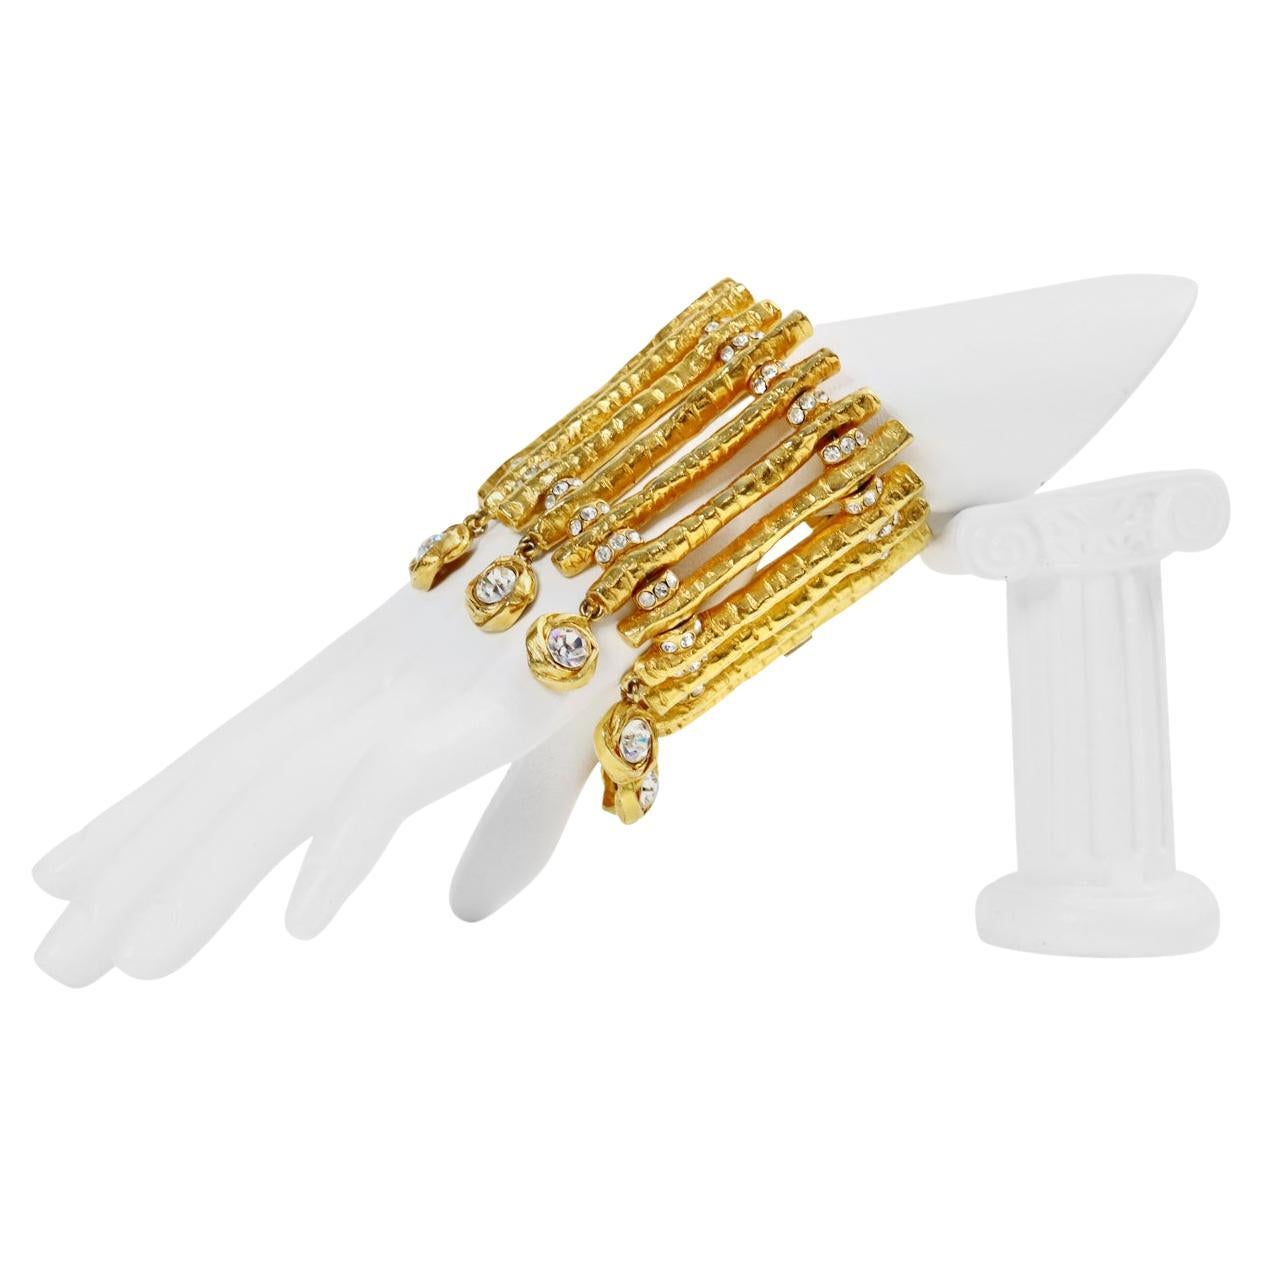 Vintage Christian Lacroix Paris Bracelet en or avec des cristaux pendants.  Ma pièce Lacroix préférée ! Il y a de longues barres avec des cristaux entre elles et de grands cristaux ronds suspendus.  Spectaculaire !  Lourd et si bien fait !  Voilà